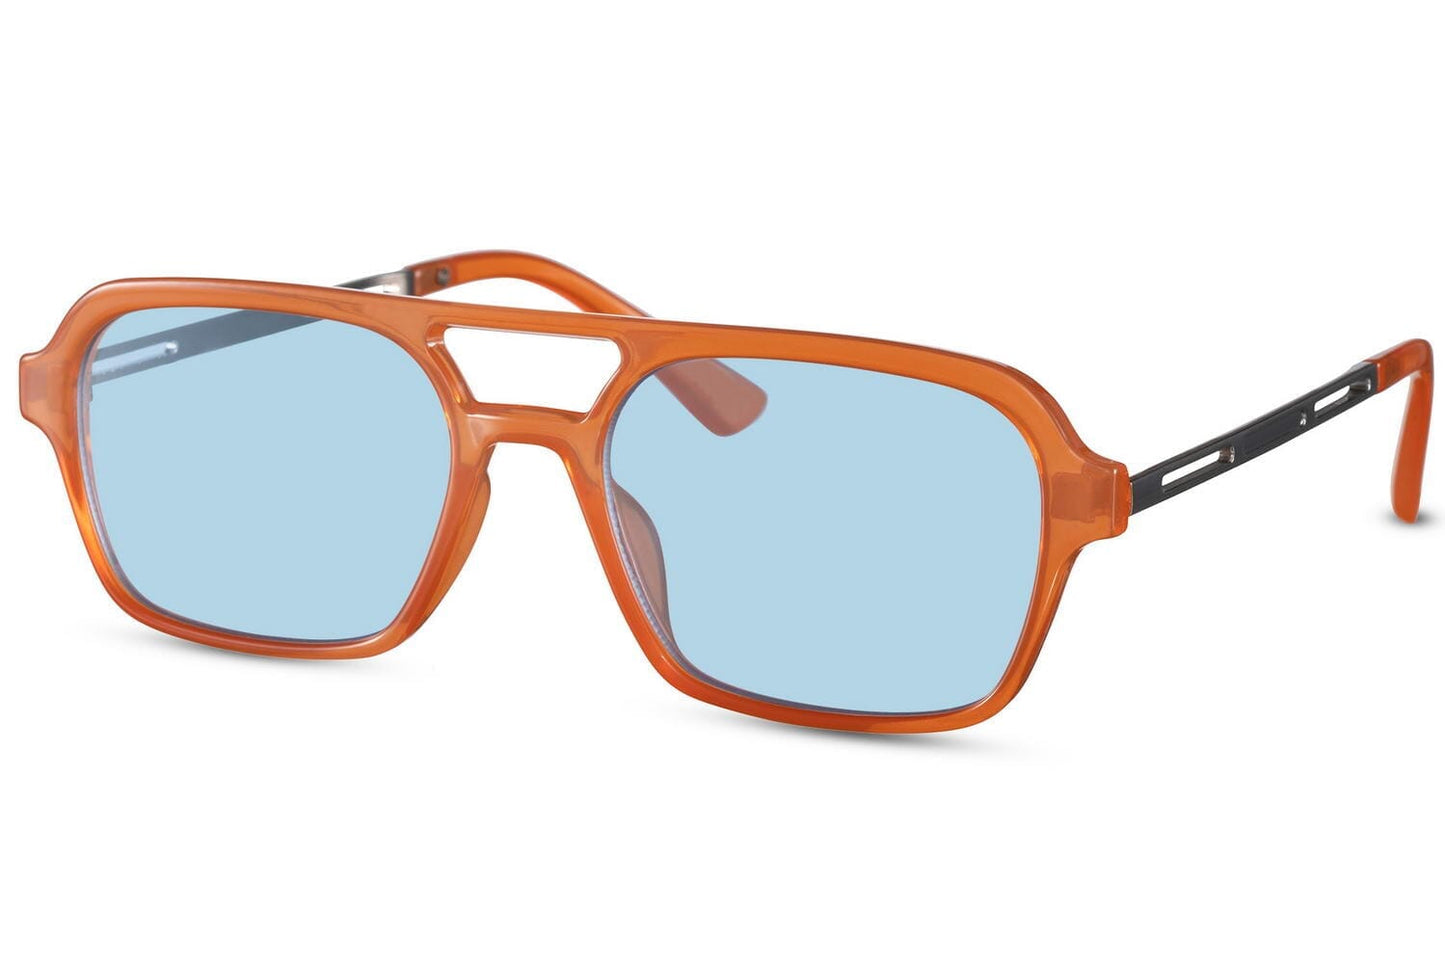 Blue lens sunglasses. Uv400 protected. Orange frames.